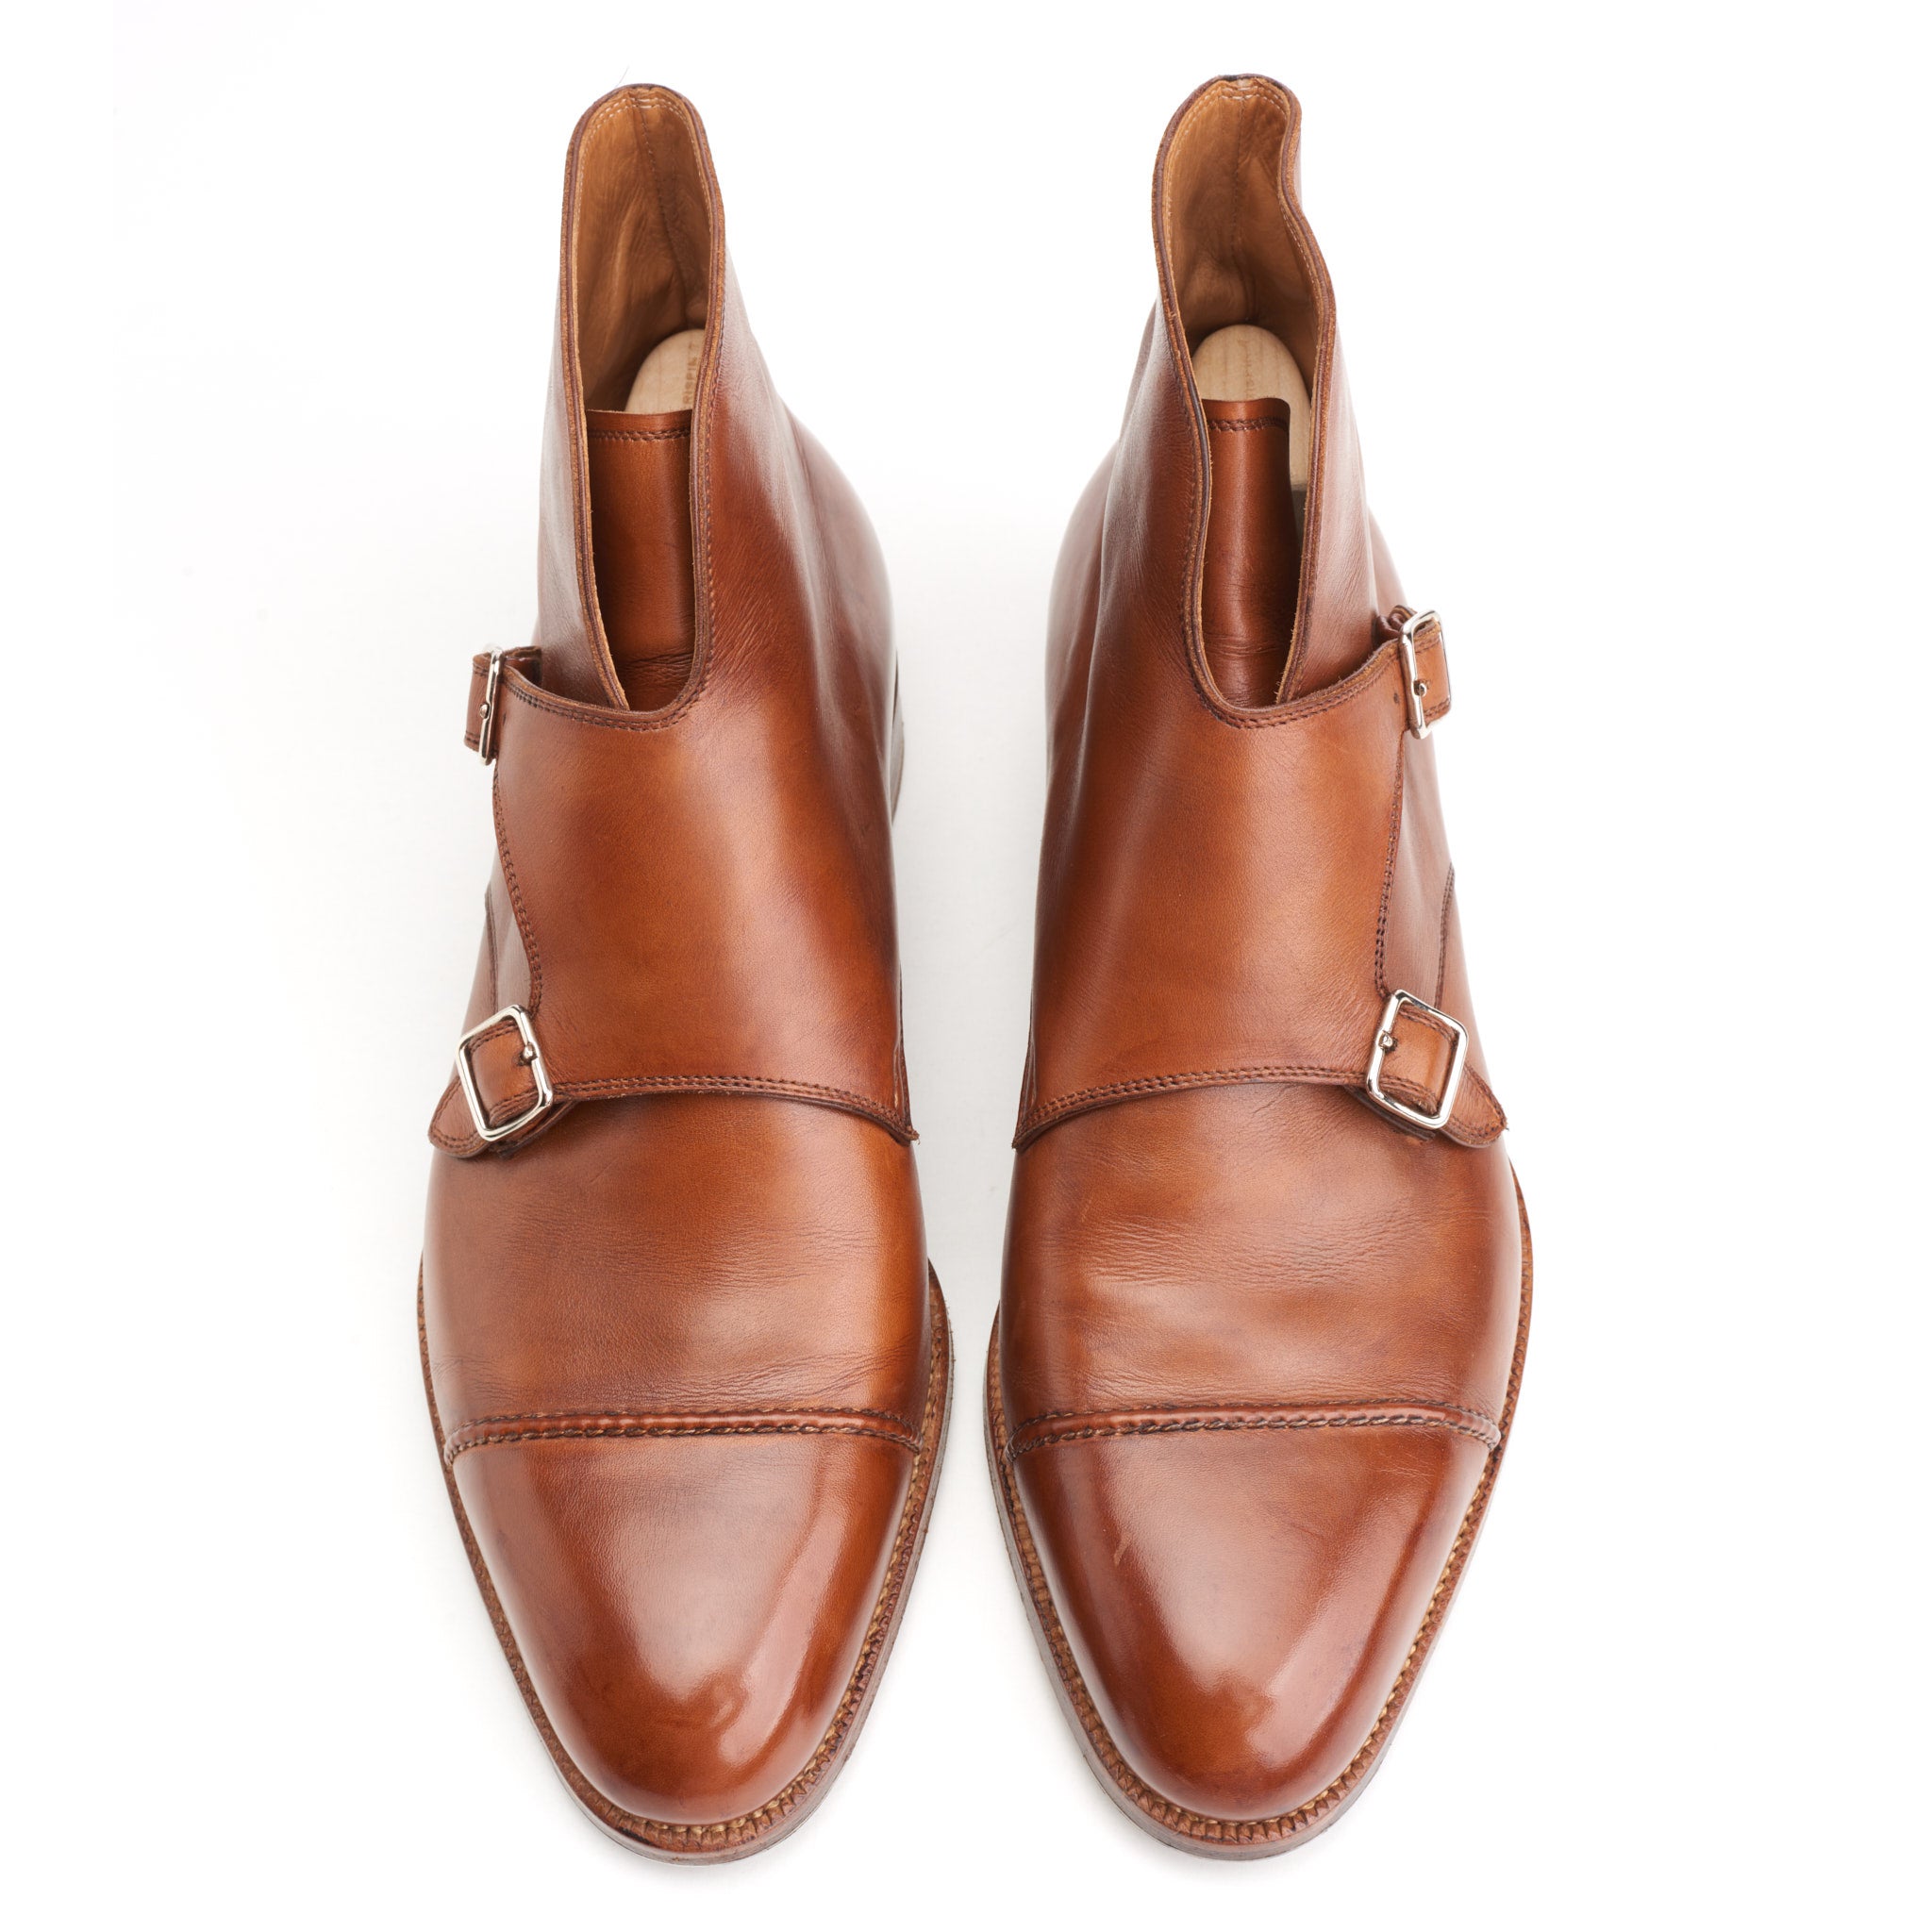 SAINT CRISPIN'S MOD 541 Cognac Leather Double Monk Boots Shoes 6.5E US 7 Trees SAINT CRISPIN'S